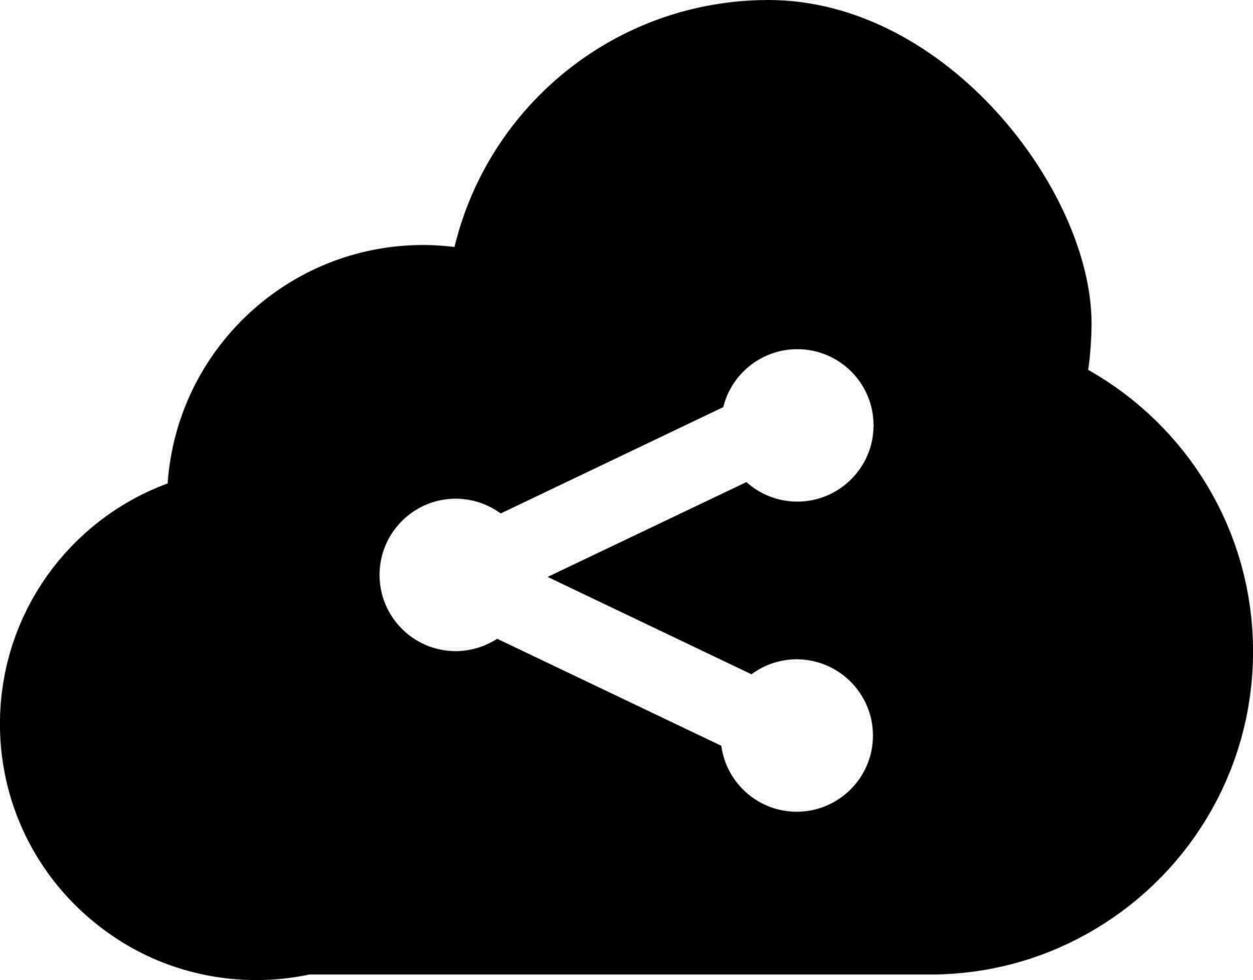 vetor ilustração do nuvem partilha ou rede conexão ícone.